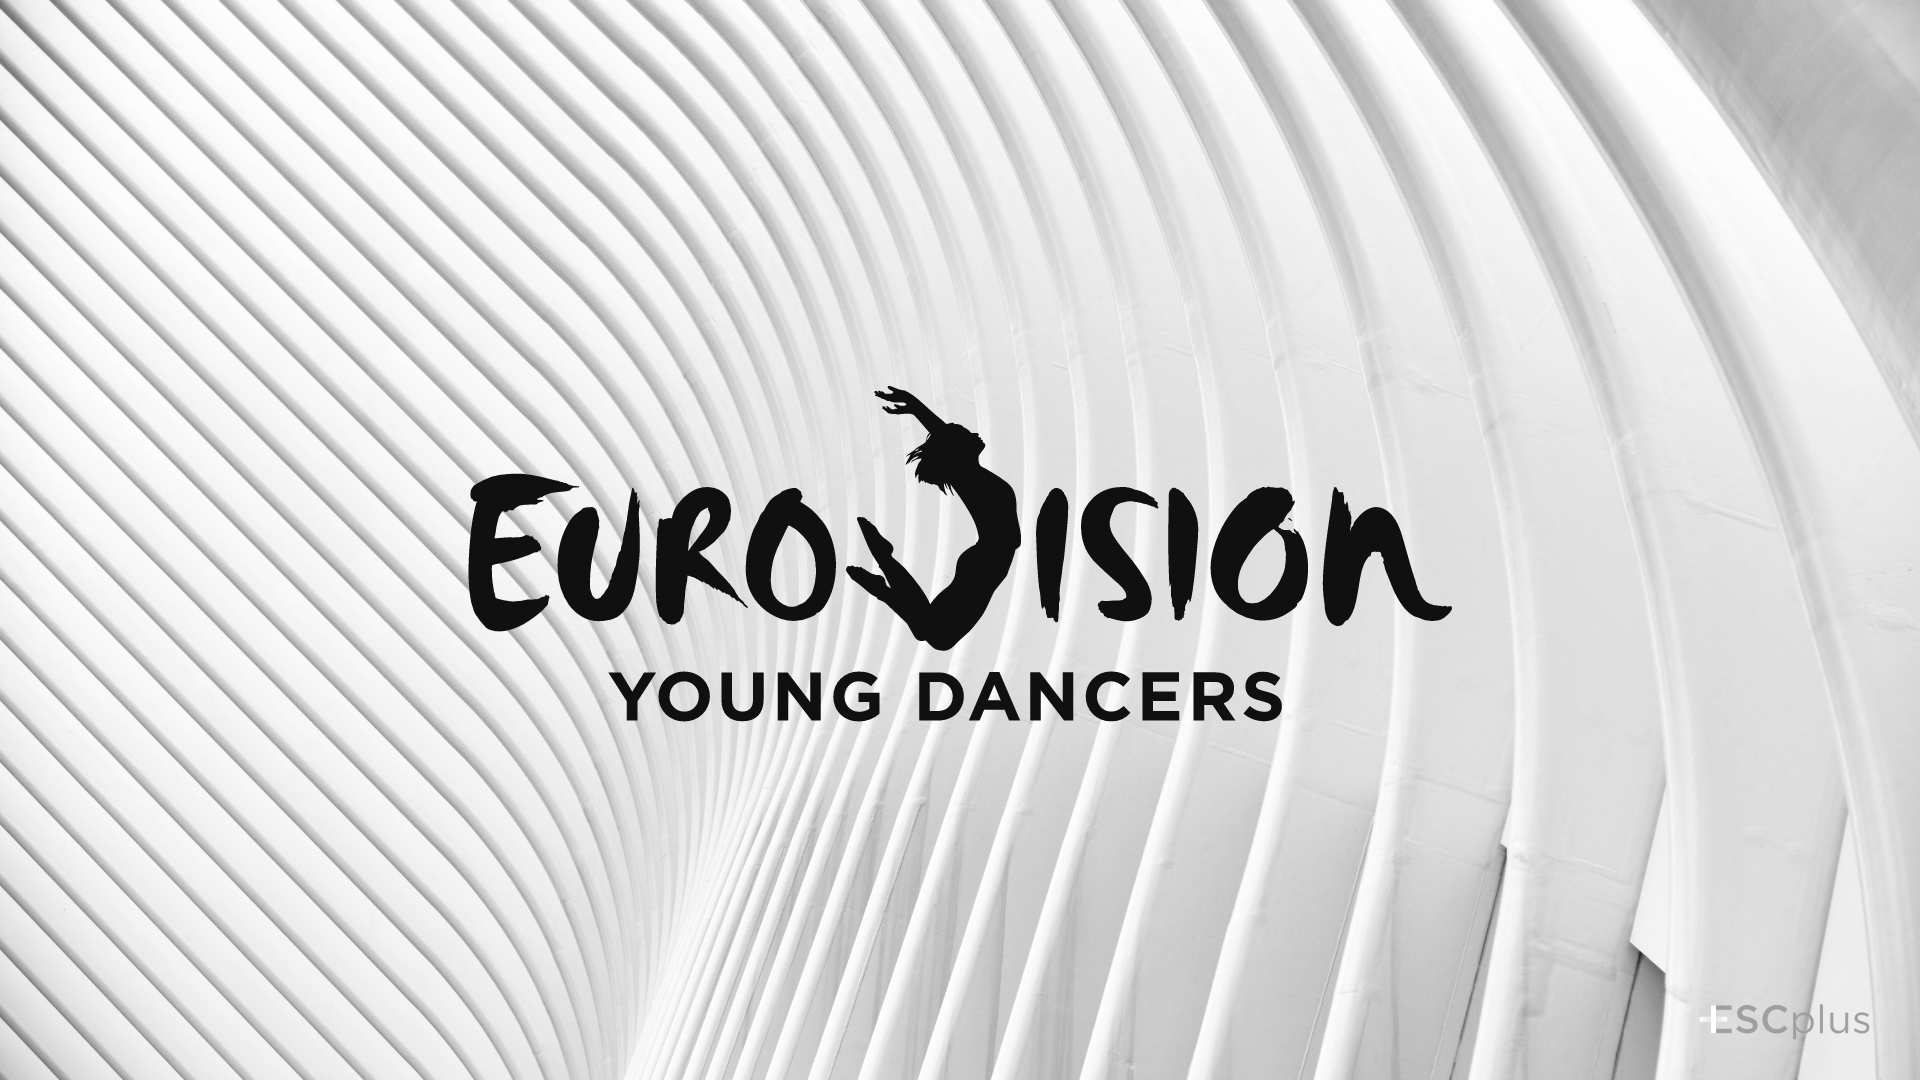 El Festival de Eurovisión de Jóvenes Bailarines no tendrá una nueva edición en 2021